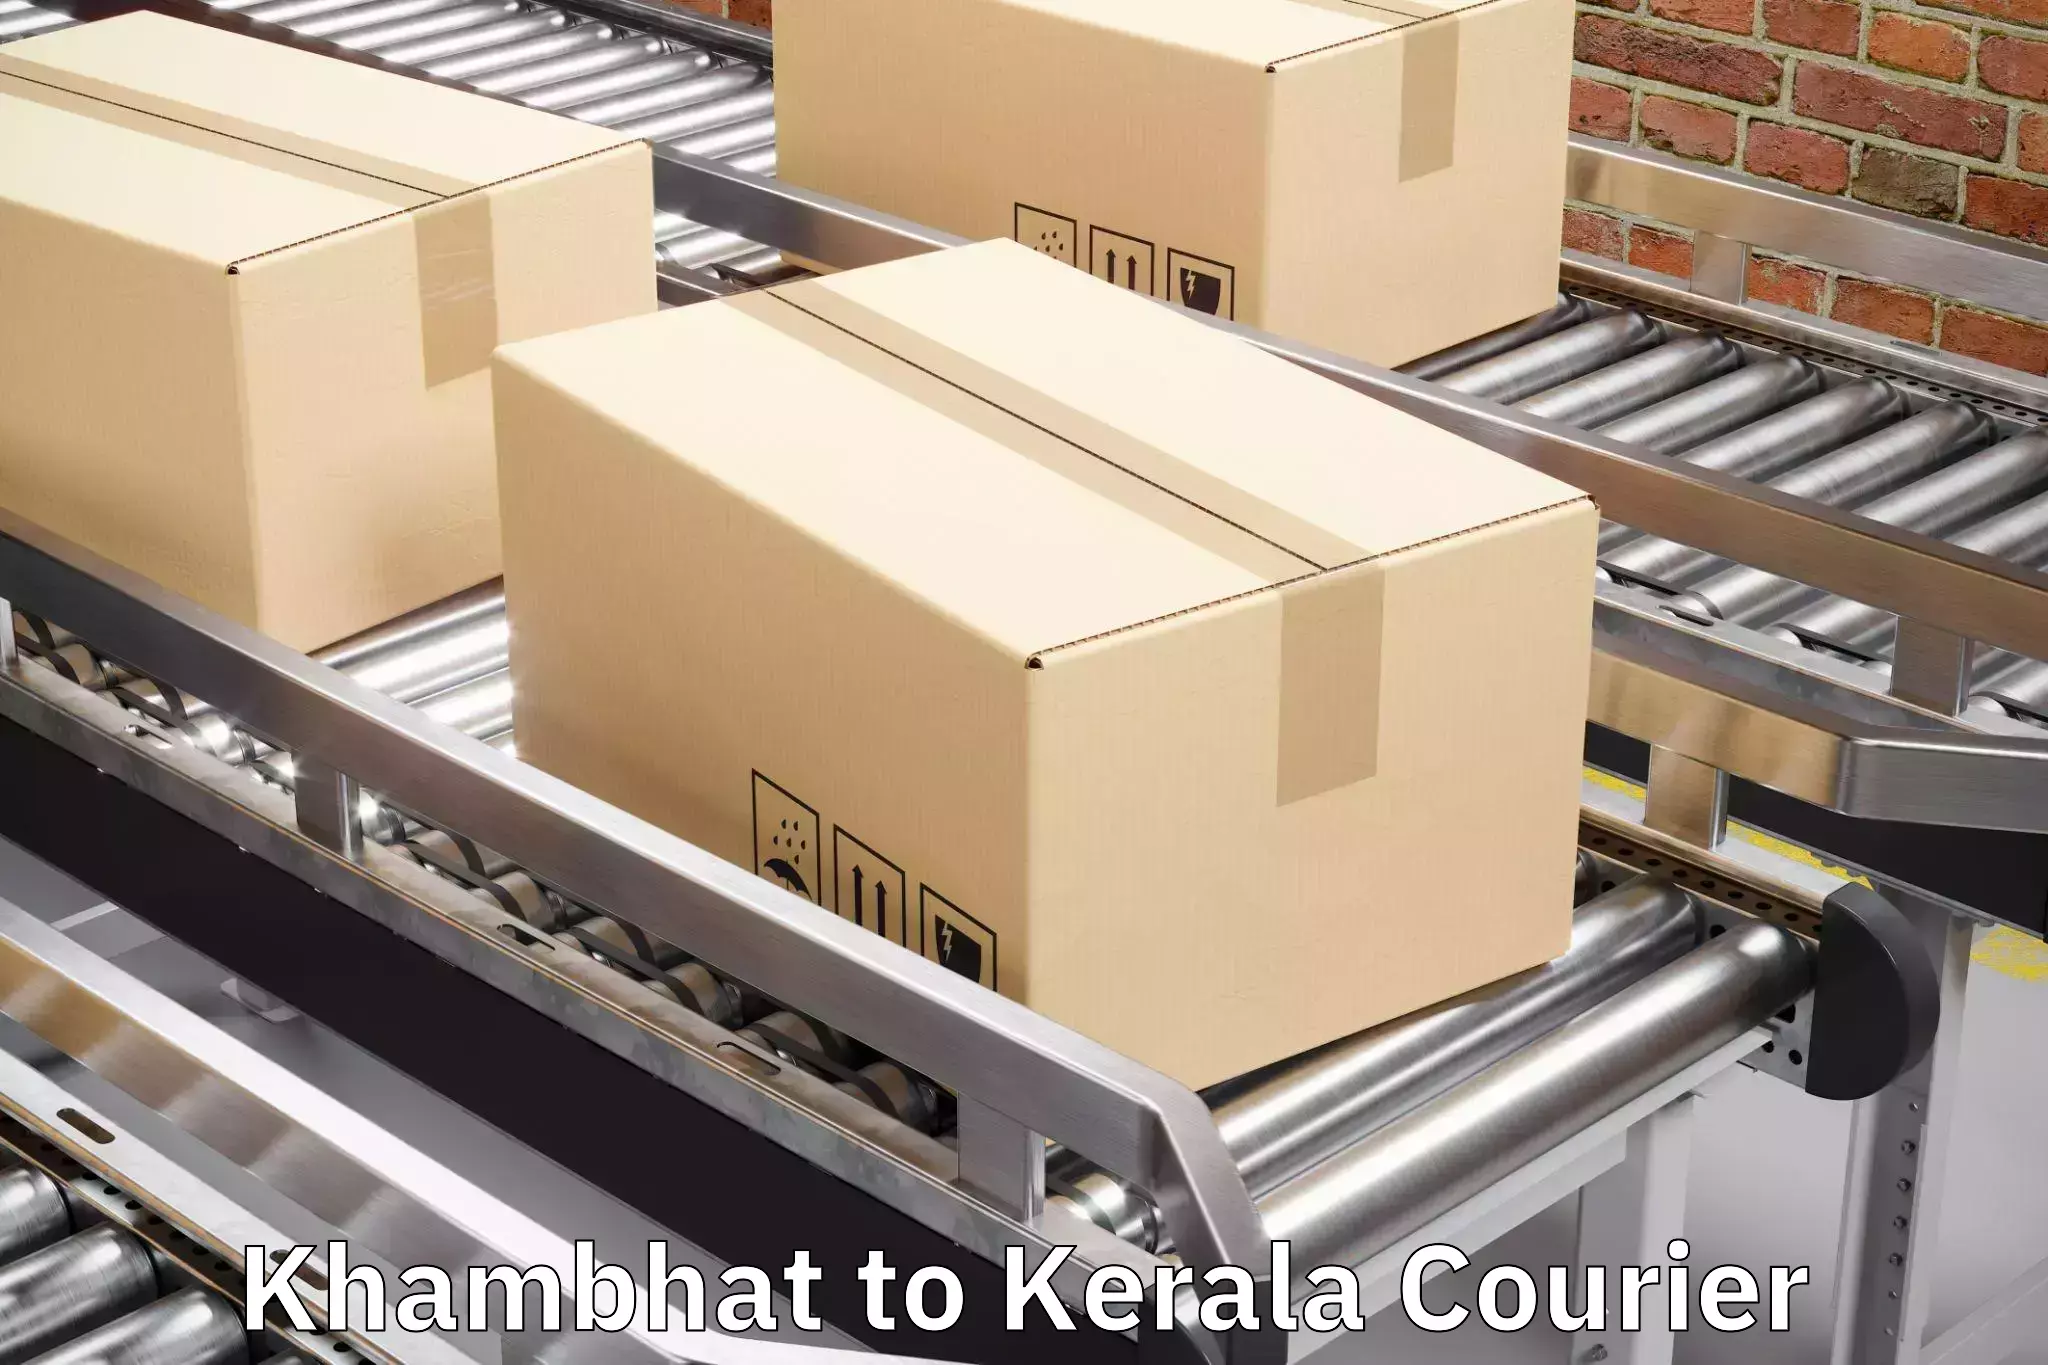 Luggage delivery system Khambhat to Manjeshwar